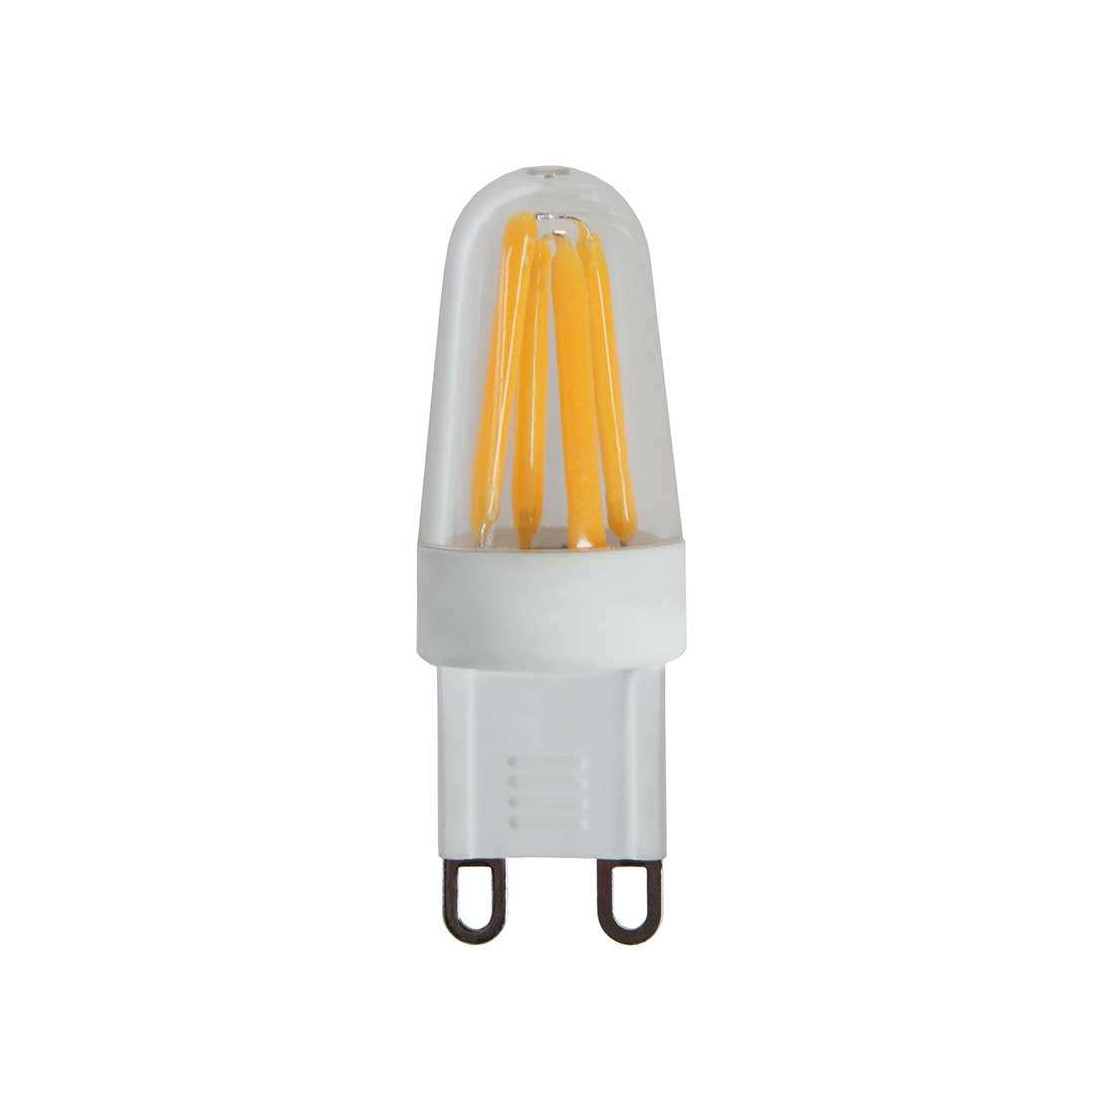 Ampoules LED G9, équivalent 40 W (5 W), 450 lm, blanc froid 6000 K, angle  de faisceau de 360 degrés, base G9 à deux broches pour éclairage  domestique, lustres, appliques murales, lot de 5